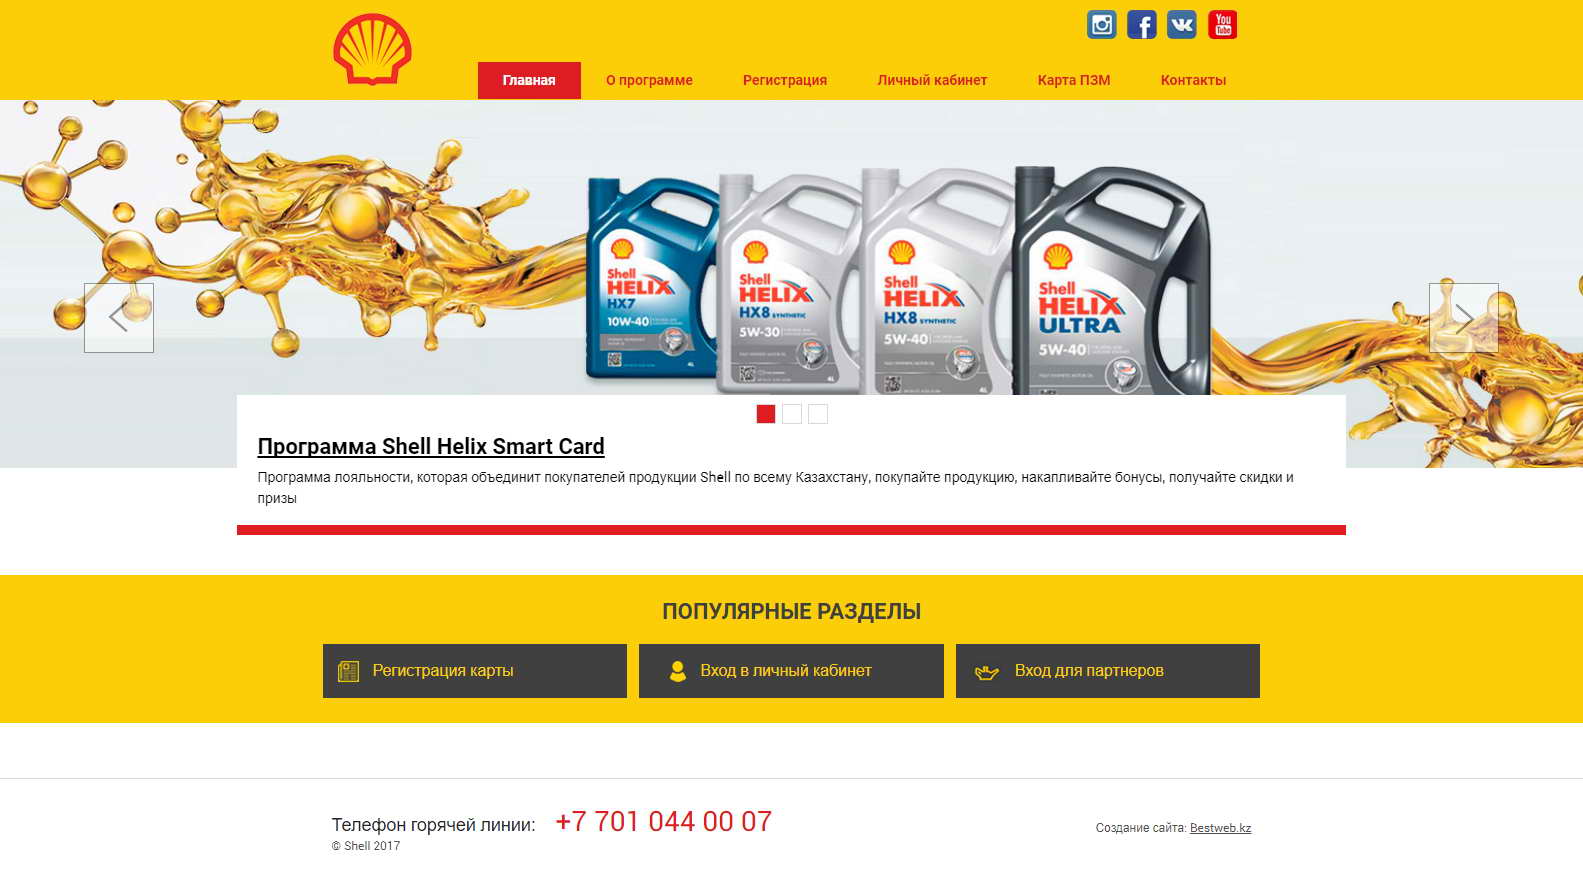 Корпоративный сайт с CRM системой ведущей учёт продаж товаров продукции Shell у своих партнеров по Казахстану. Полноэкранная версия сайта.